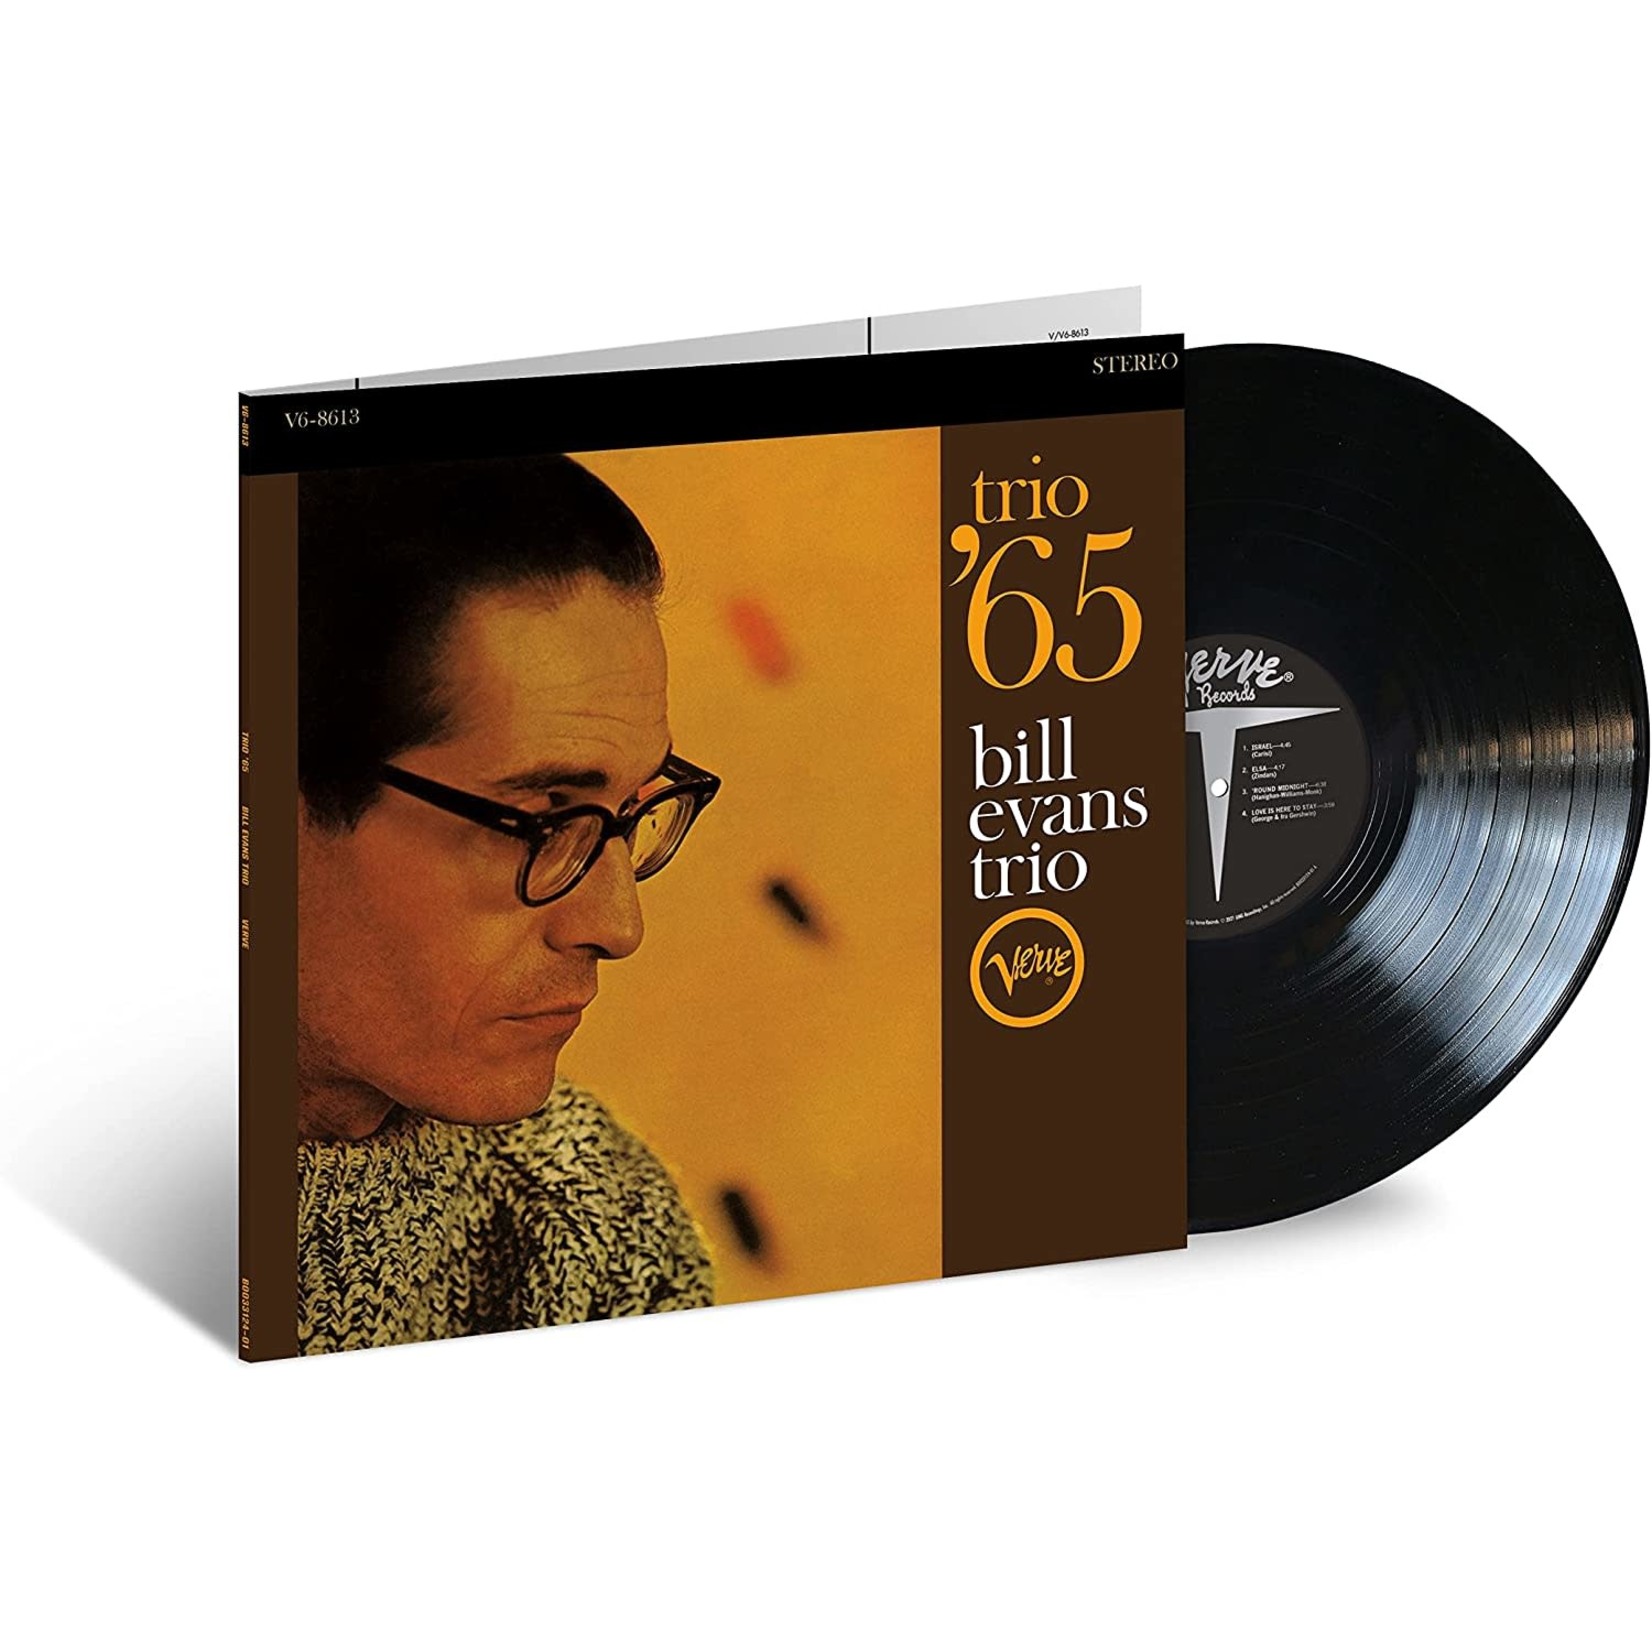 Vinyl Bill Evans - Trio '65 (Verve Acoustic Sounds Series) (Vinyl)